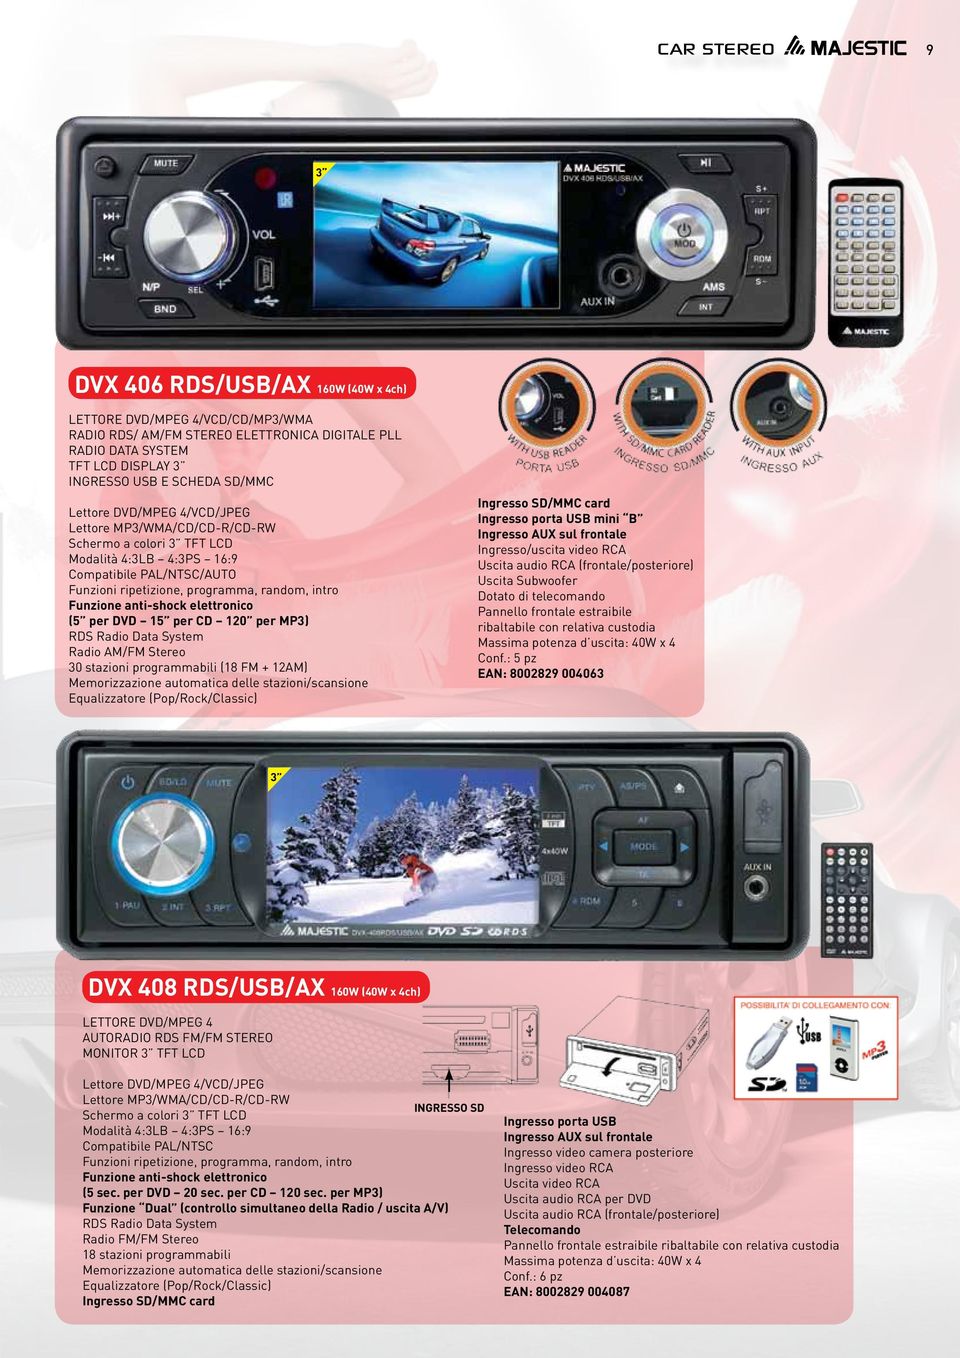 anti-shock elettronico (5 per DVD 15 per CD 120 per MP3) RDS Radio Data System Radio AM/FM Stereo 30 stazioni programmabili (18 FM + 12AM) Memorizzazione automatica delle stazioni/scansione